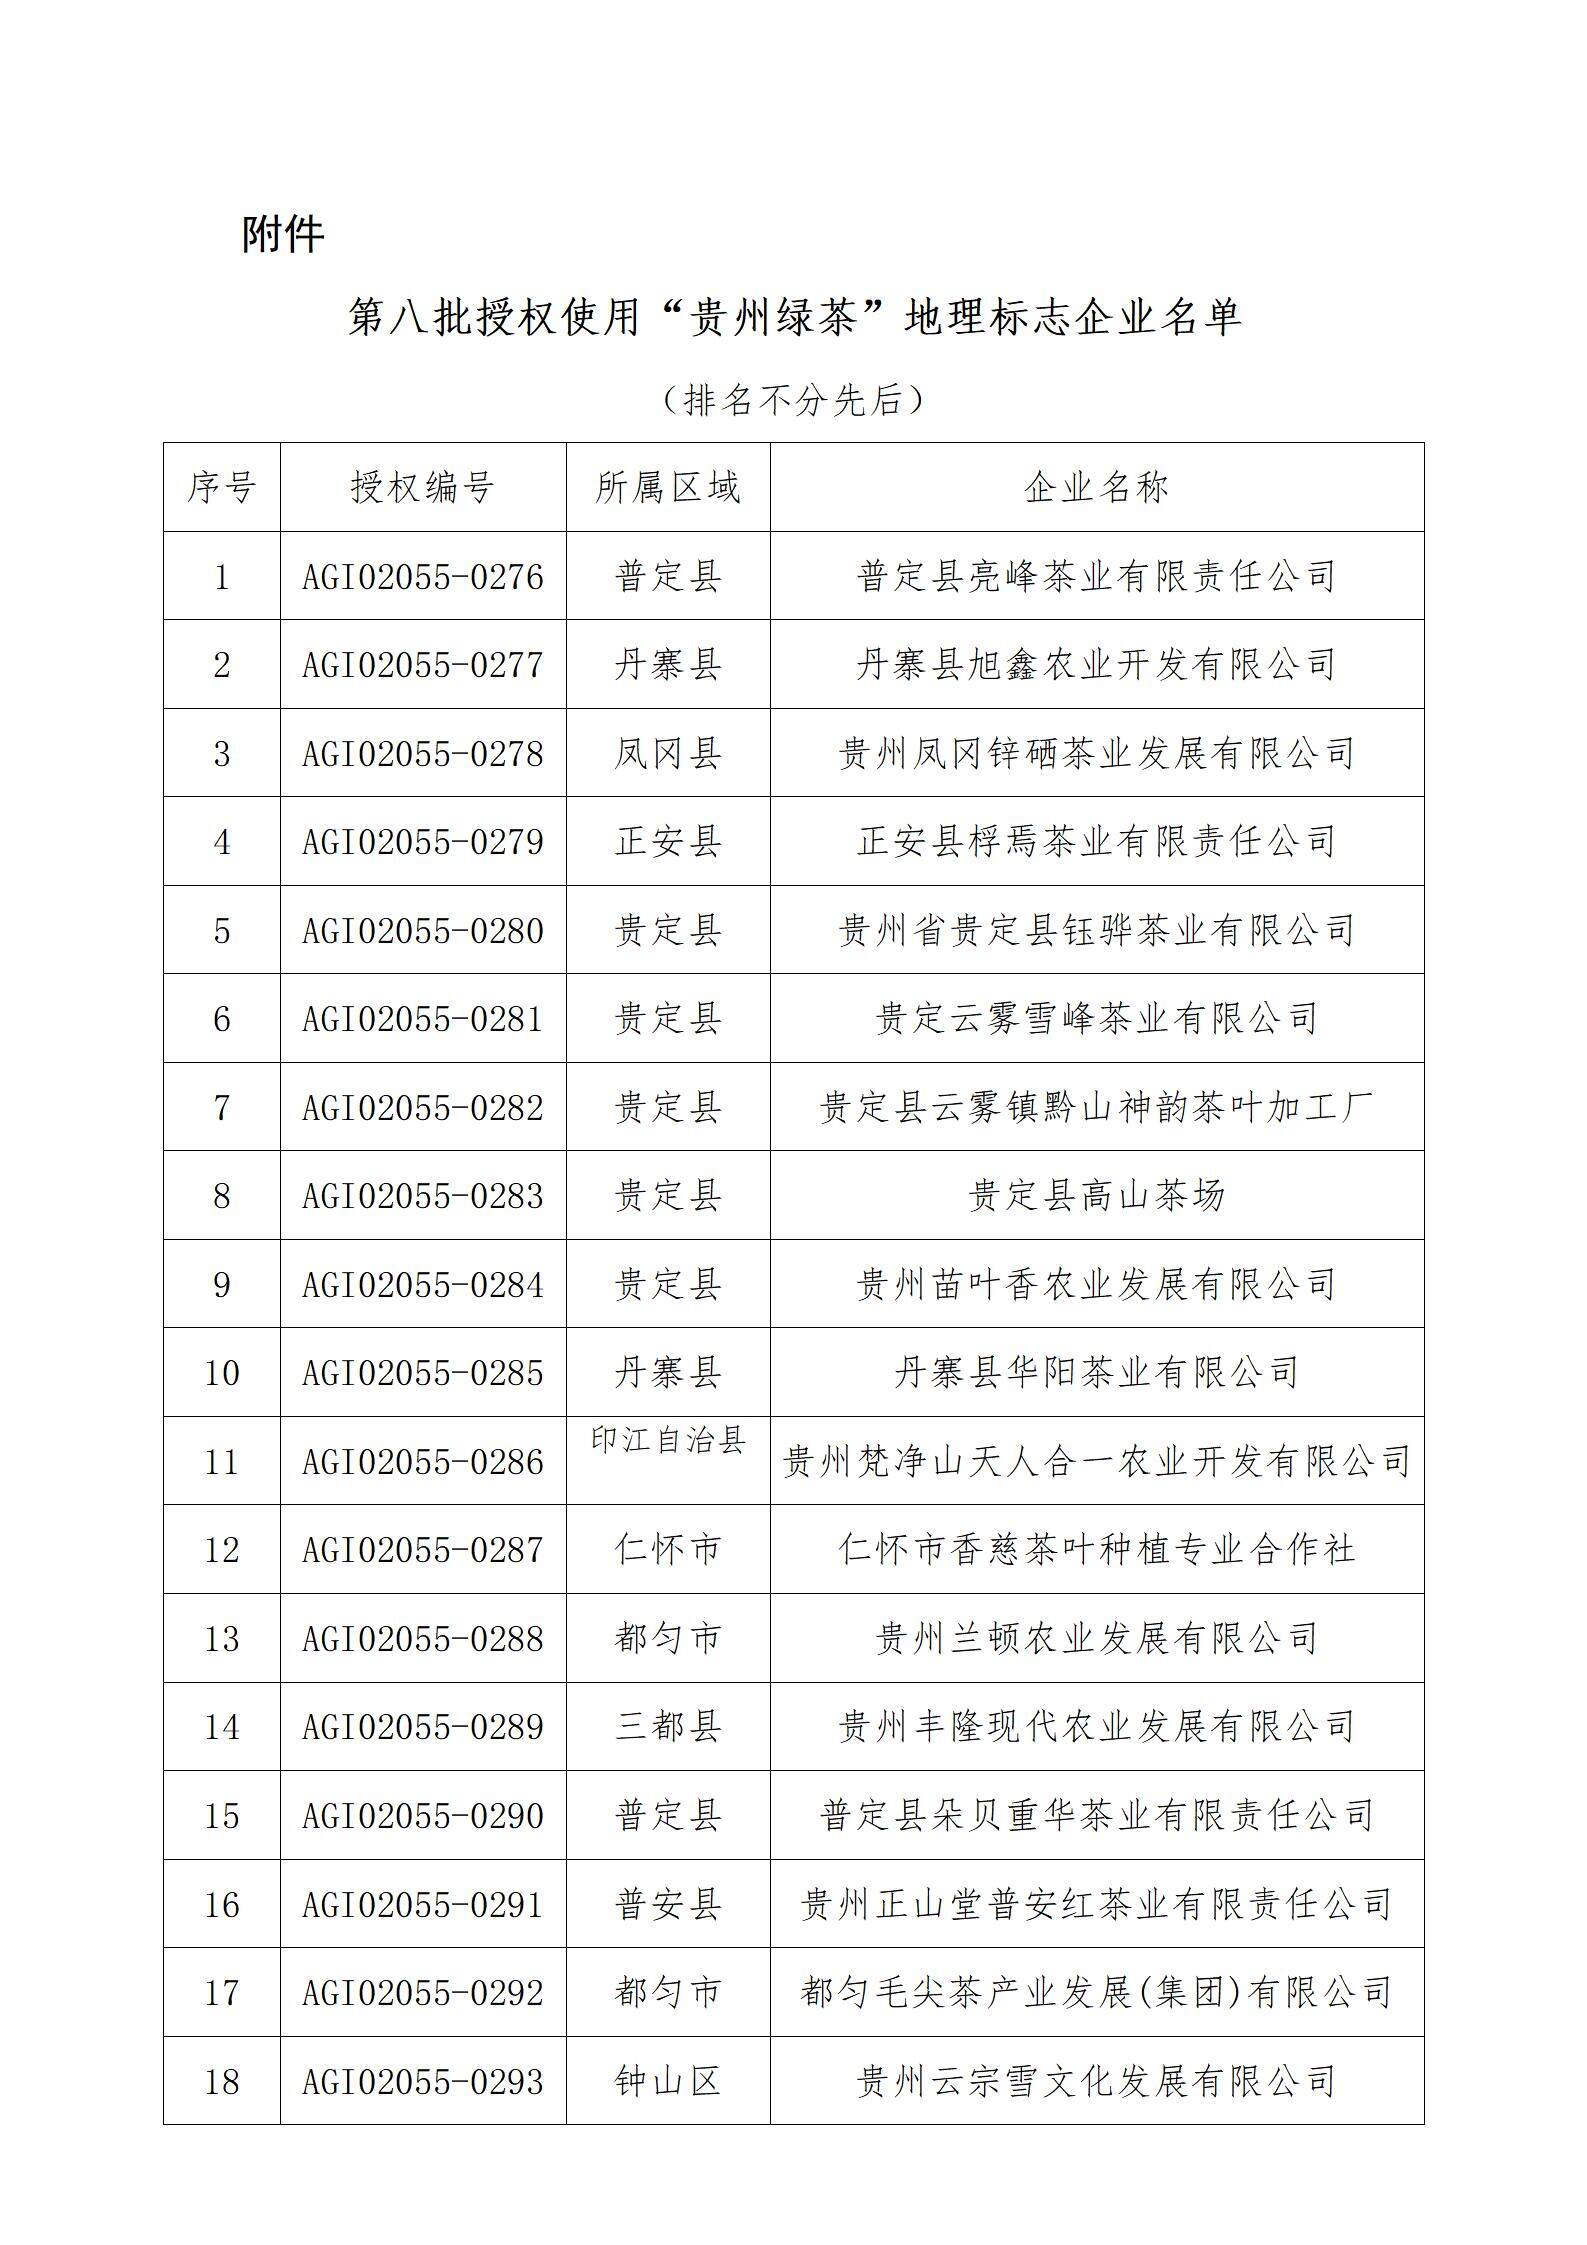 20220620 关于公布第八批“贵州绿茶”农产品地理标志使用企业的通知_02.jpg